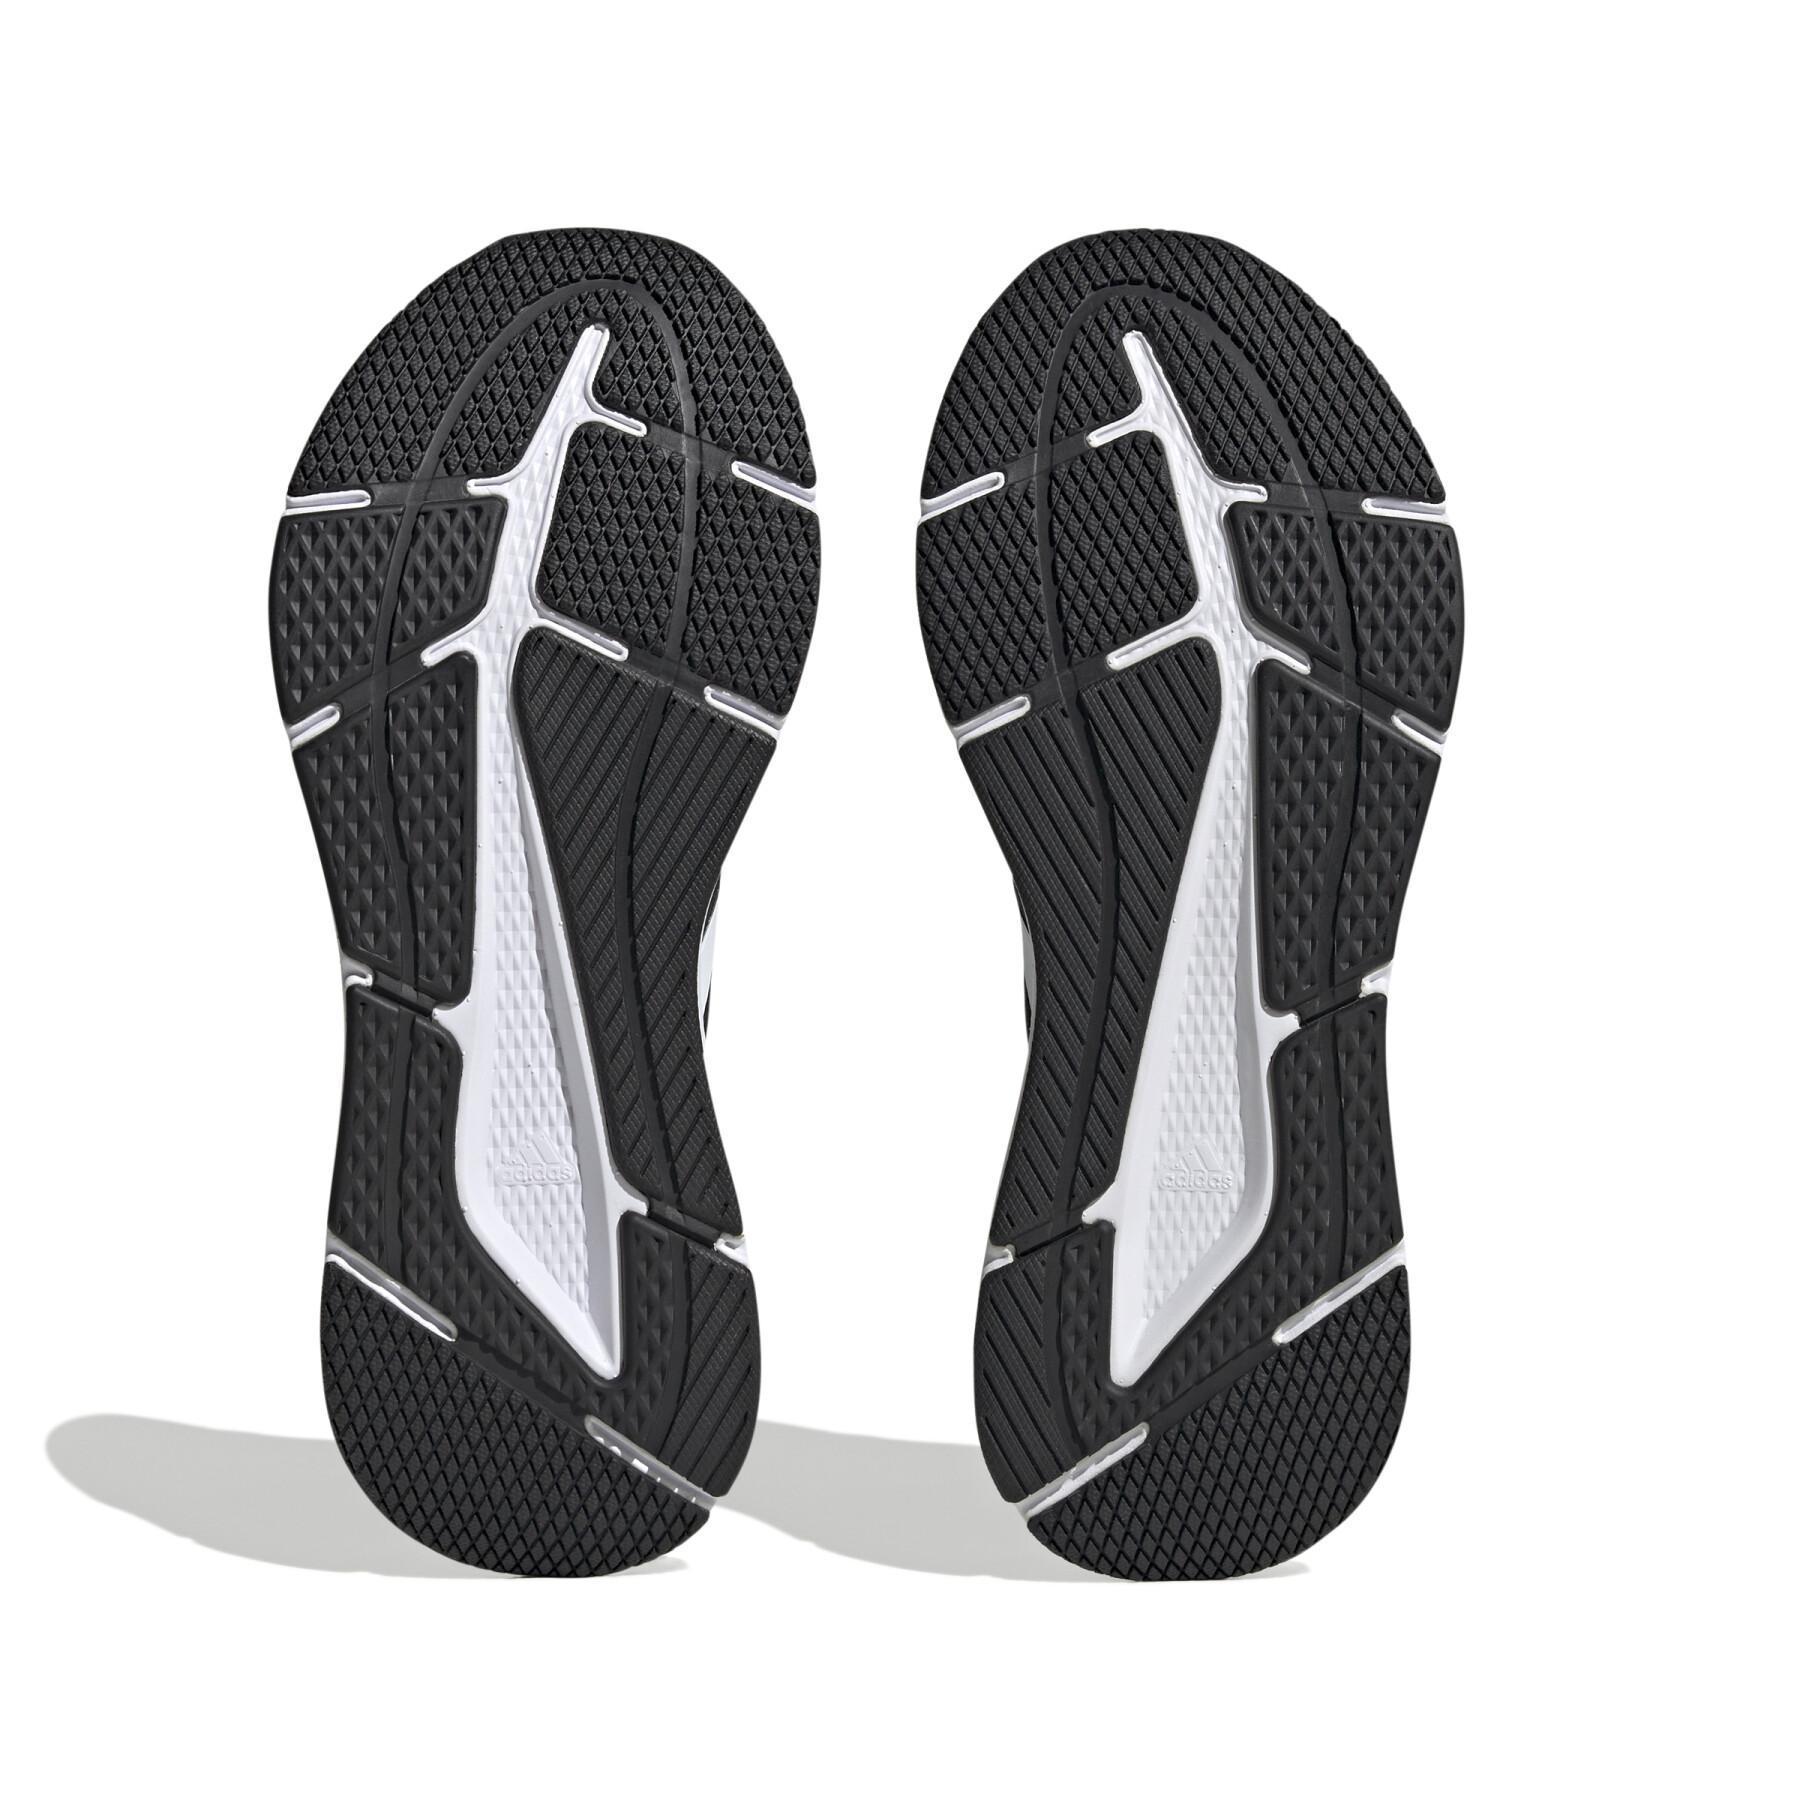 Chaussures de running adidas Questar 2 Bounce